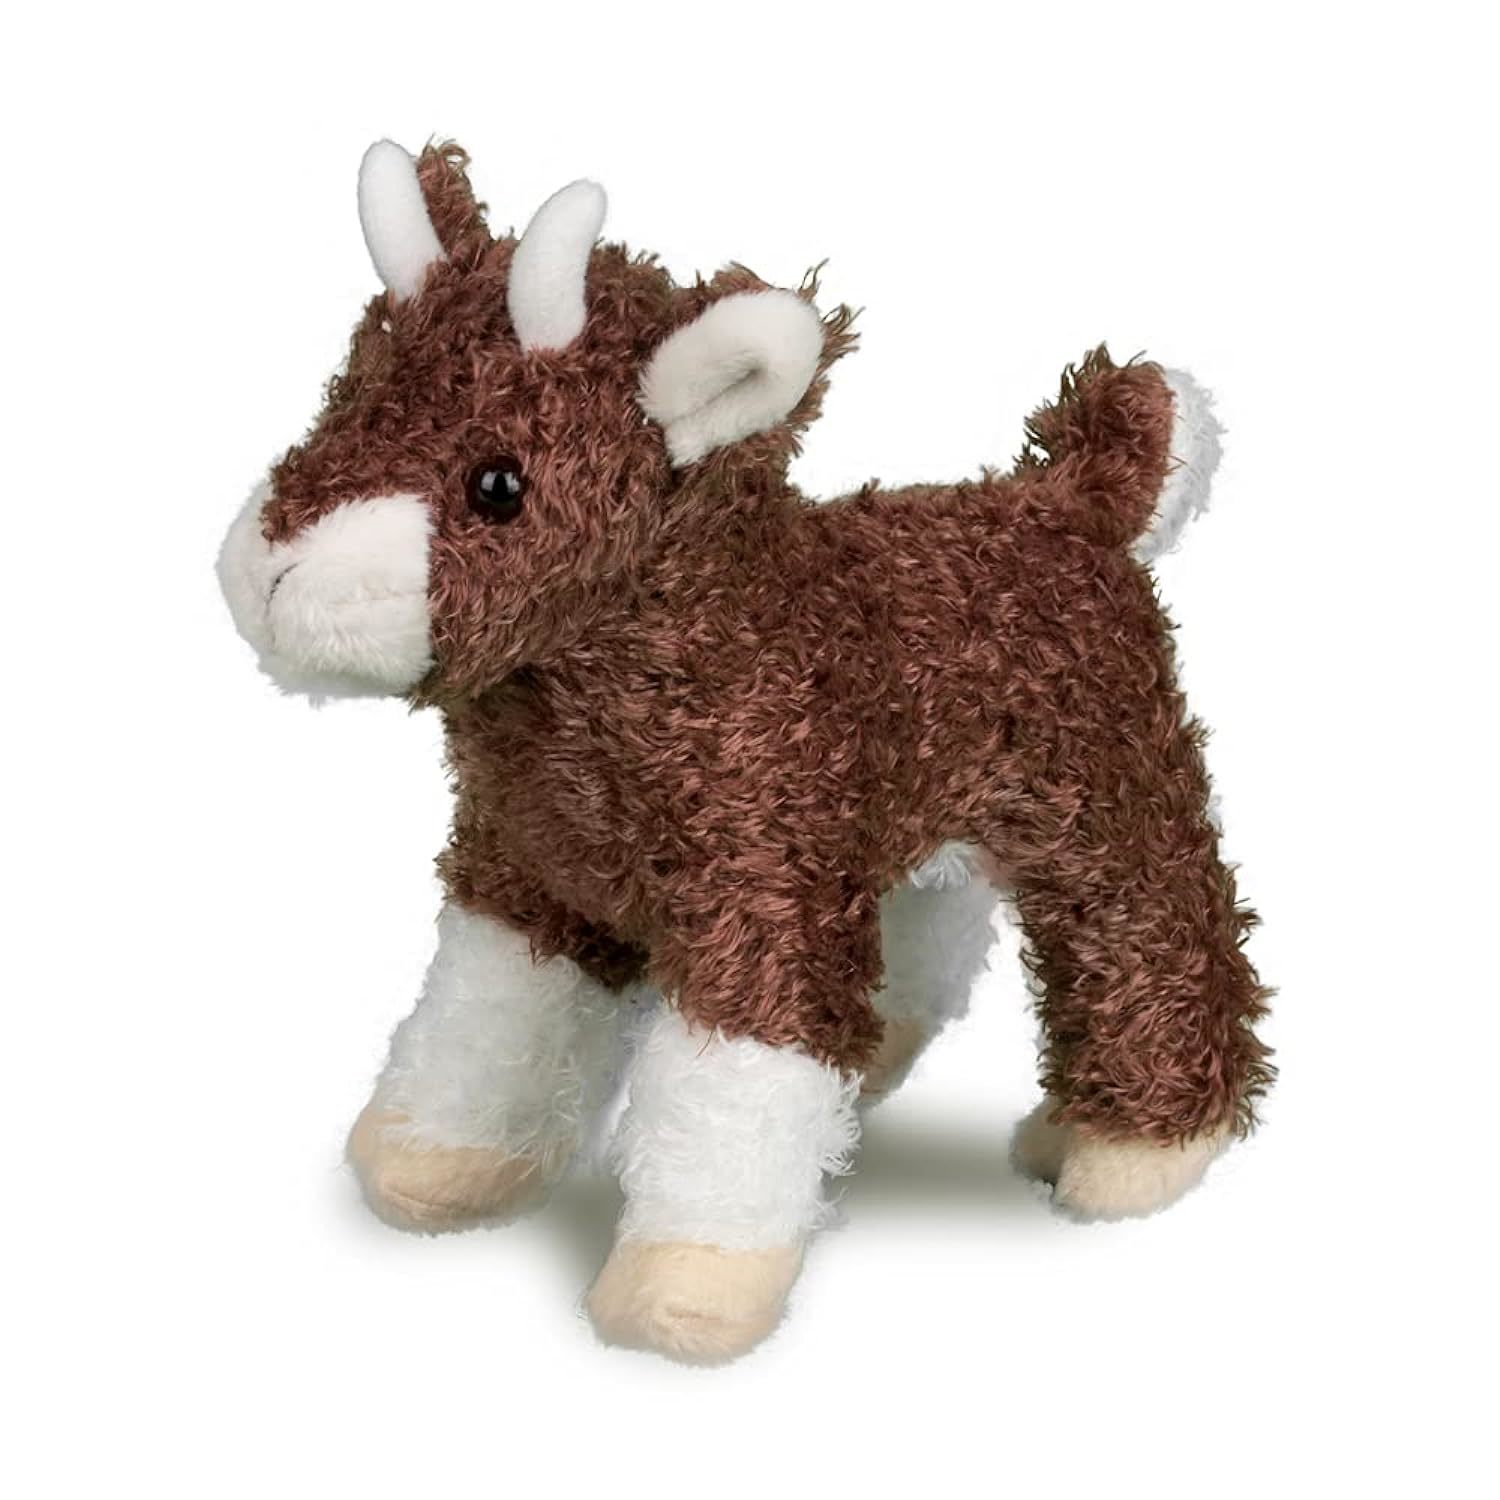 Douglas Buffy Baby Goat Plush Stuffed Animal - $20.99